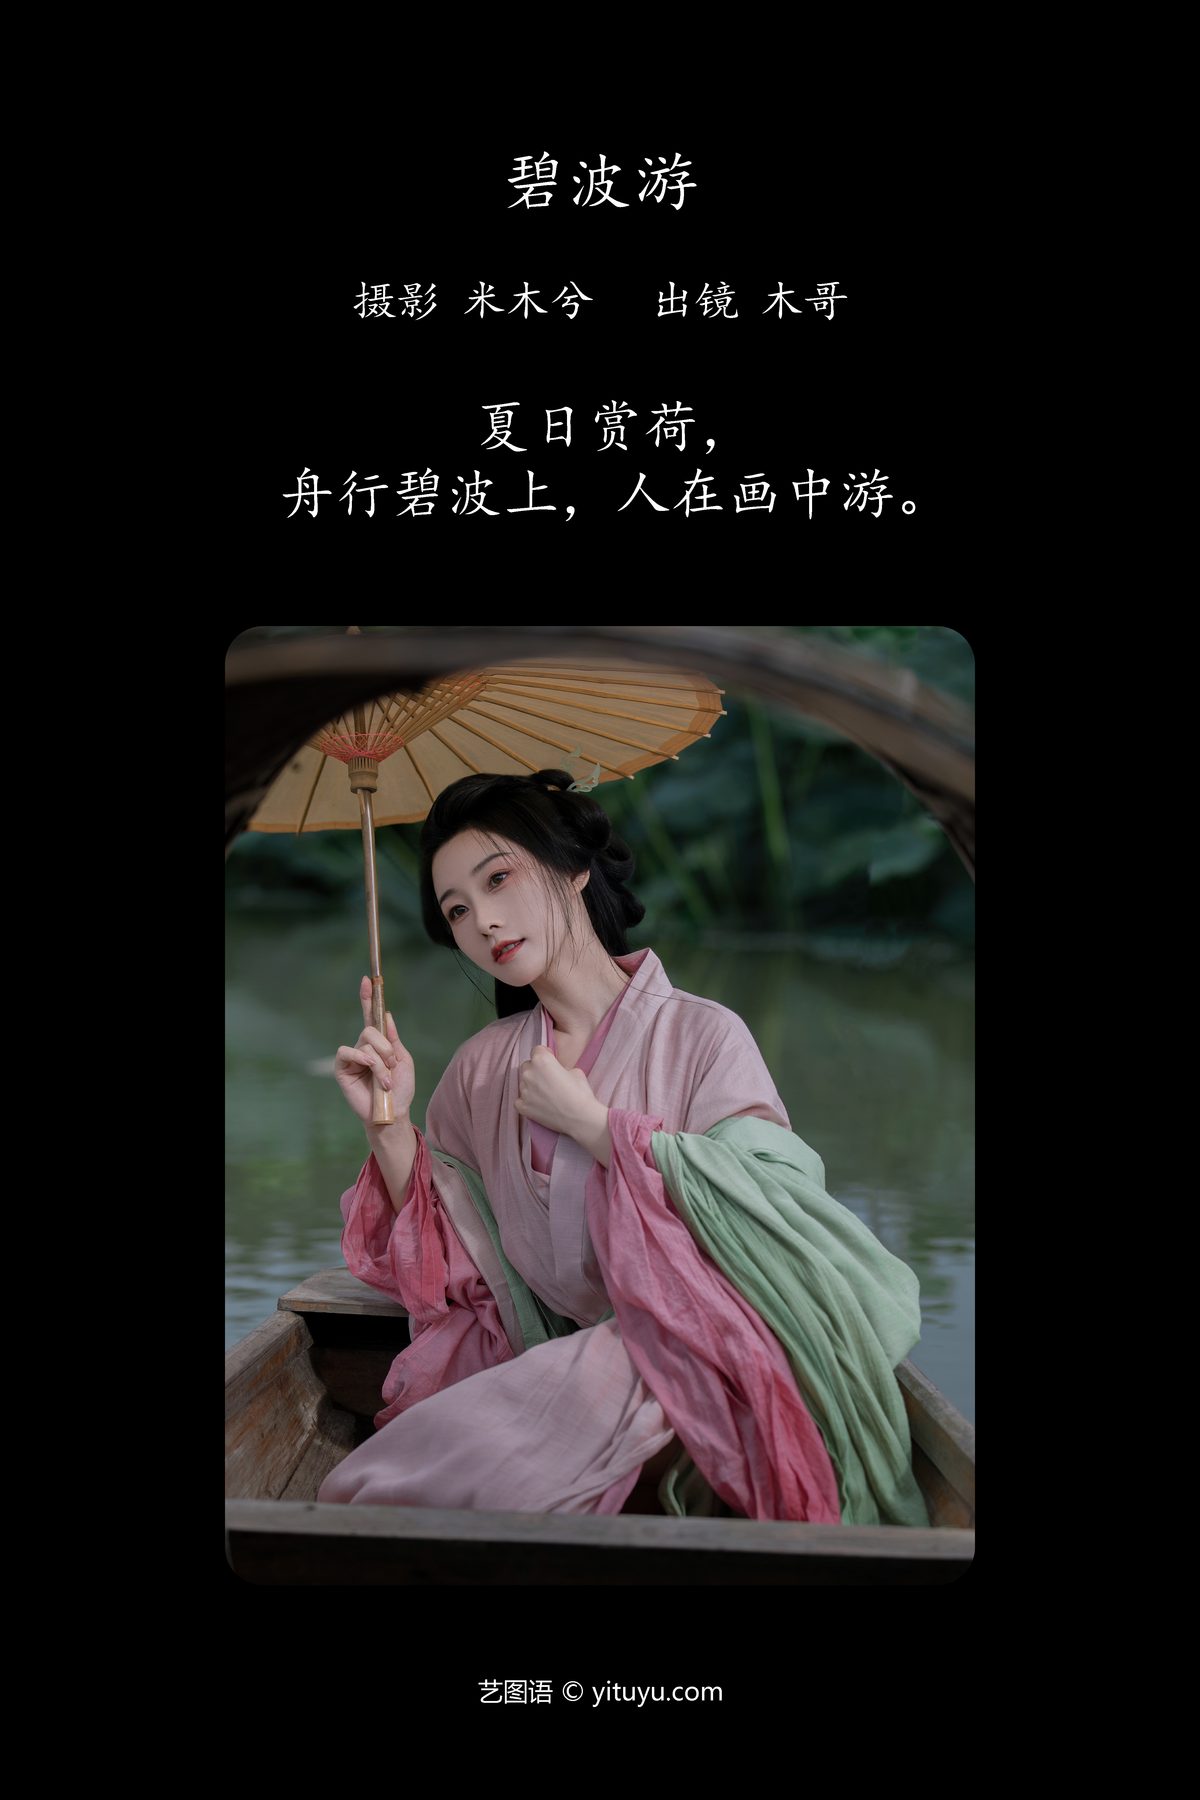 YiTuYu艺图语 Vol 4840 Mu Jing Shu 0002 2642479288.jpg